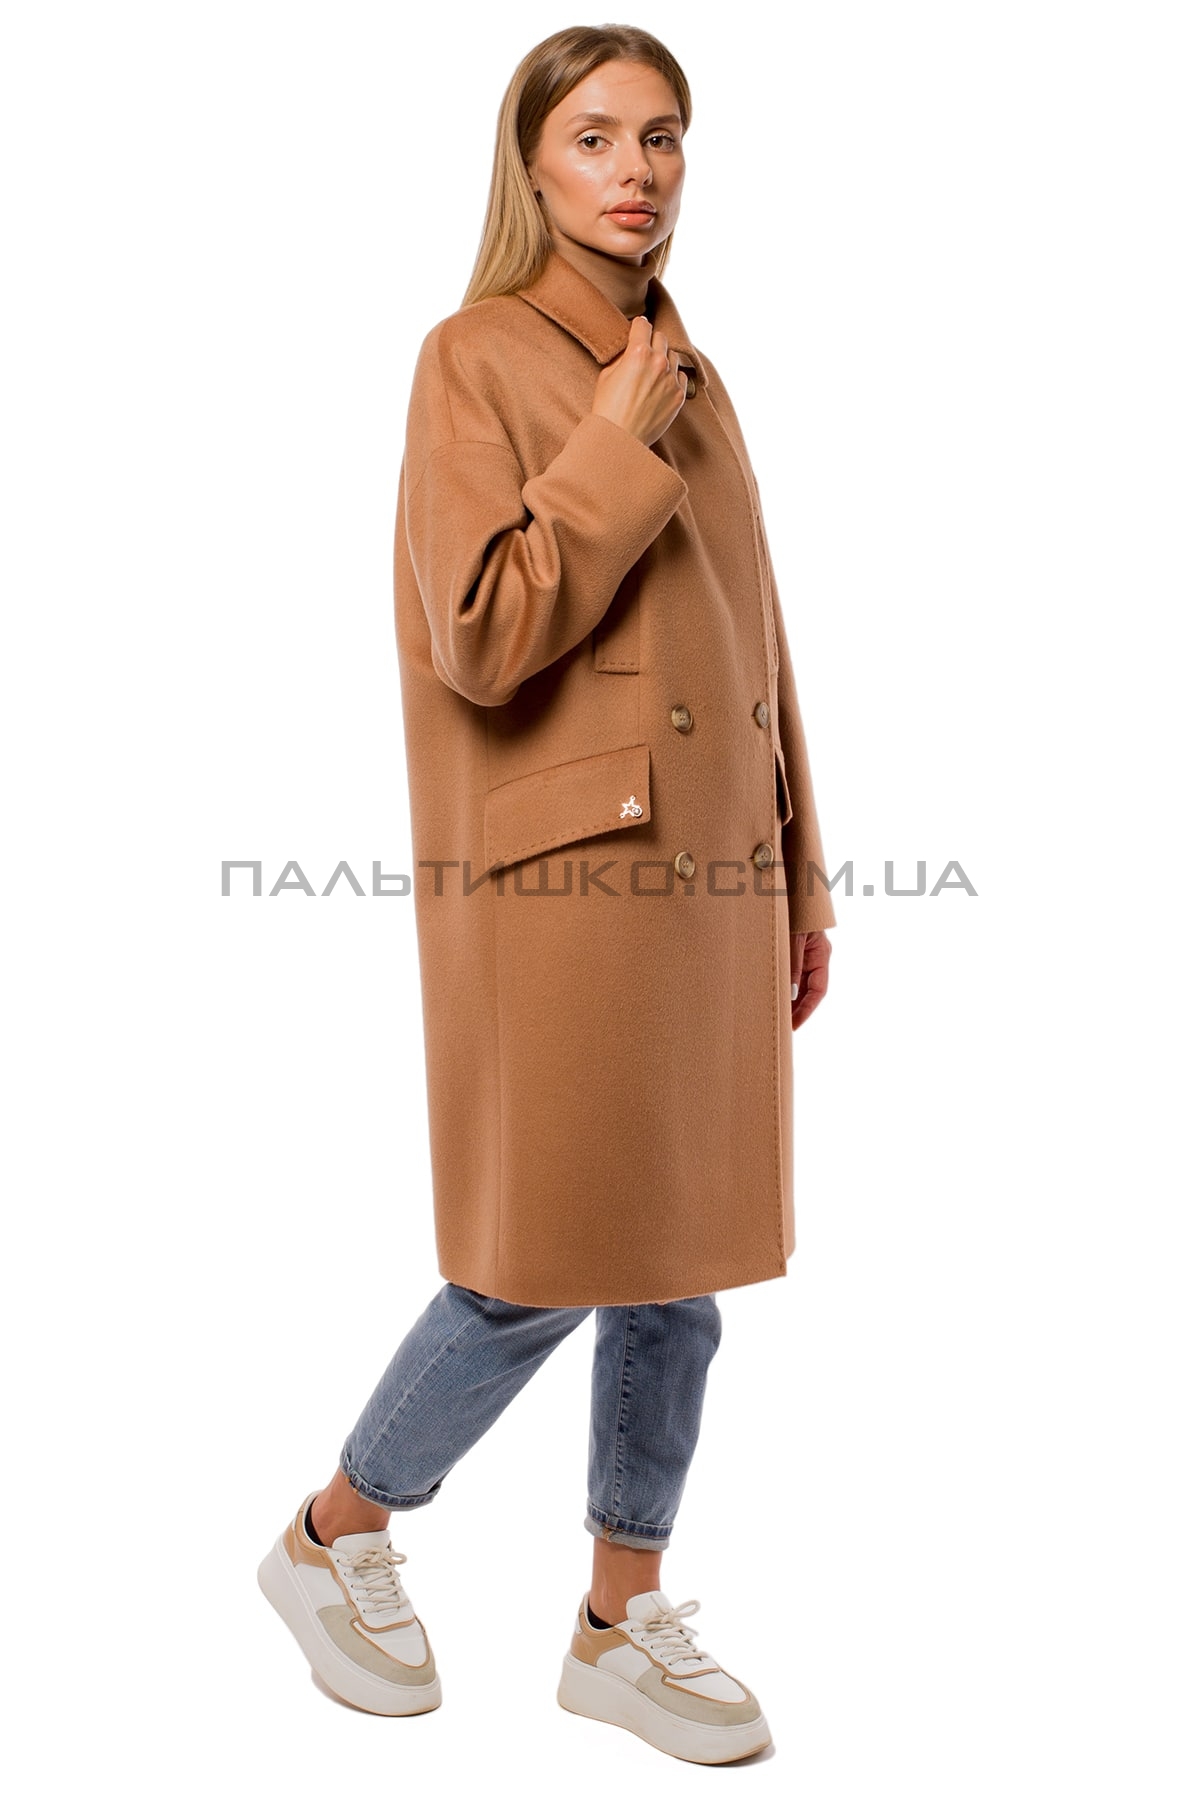  Пальто женское с карманами коричневое